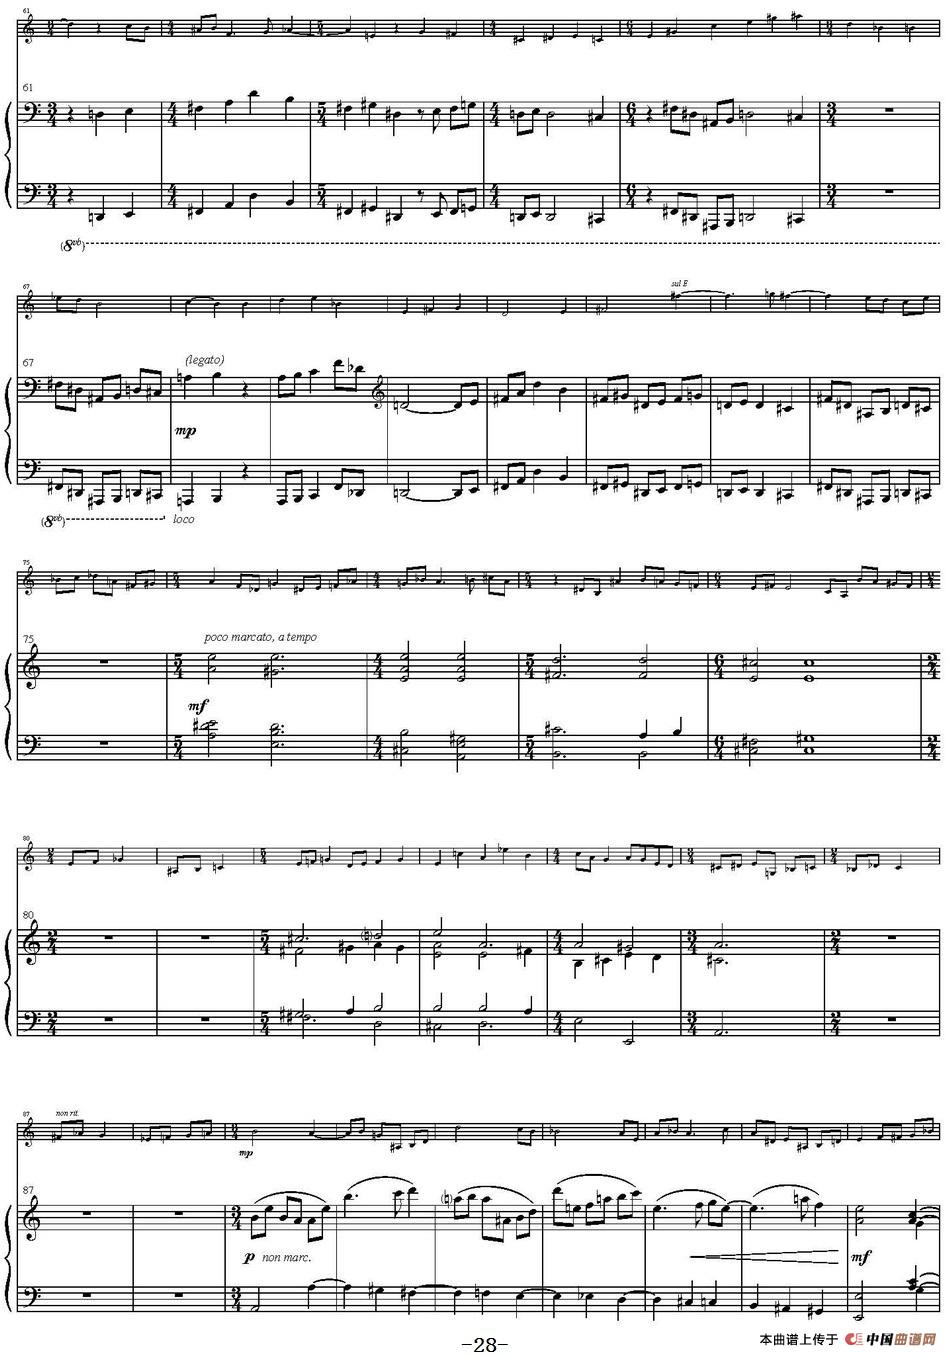 Sonata Poema aenigmaticum（小提琴+钢琴伴奏、4th move